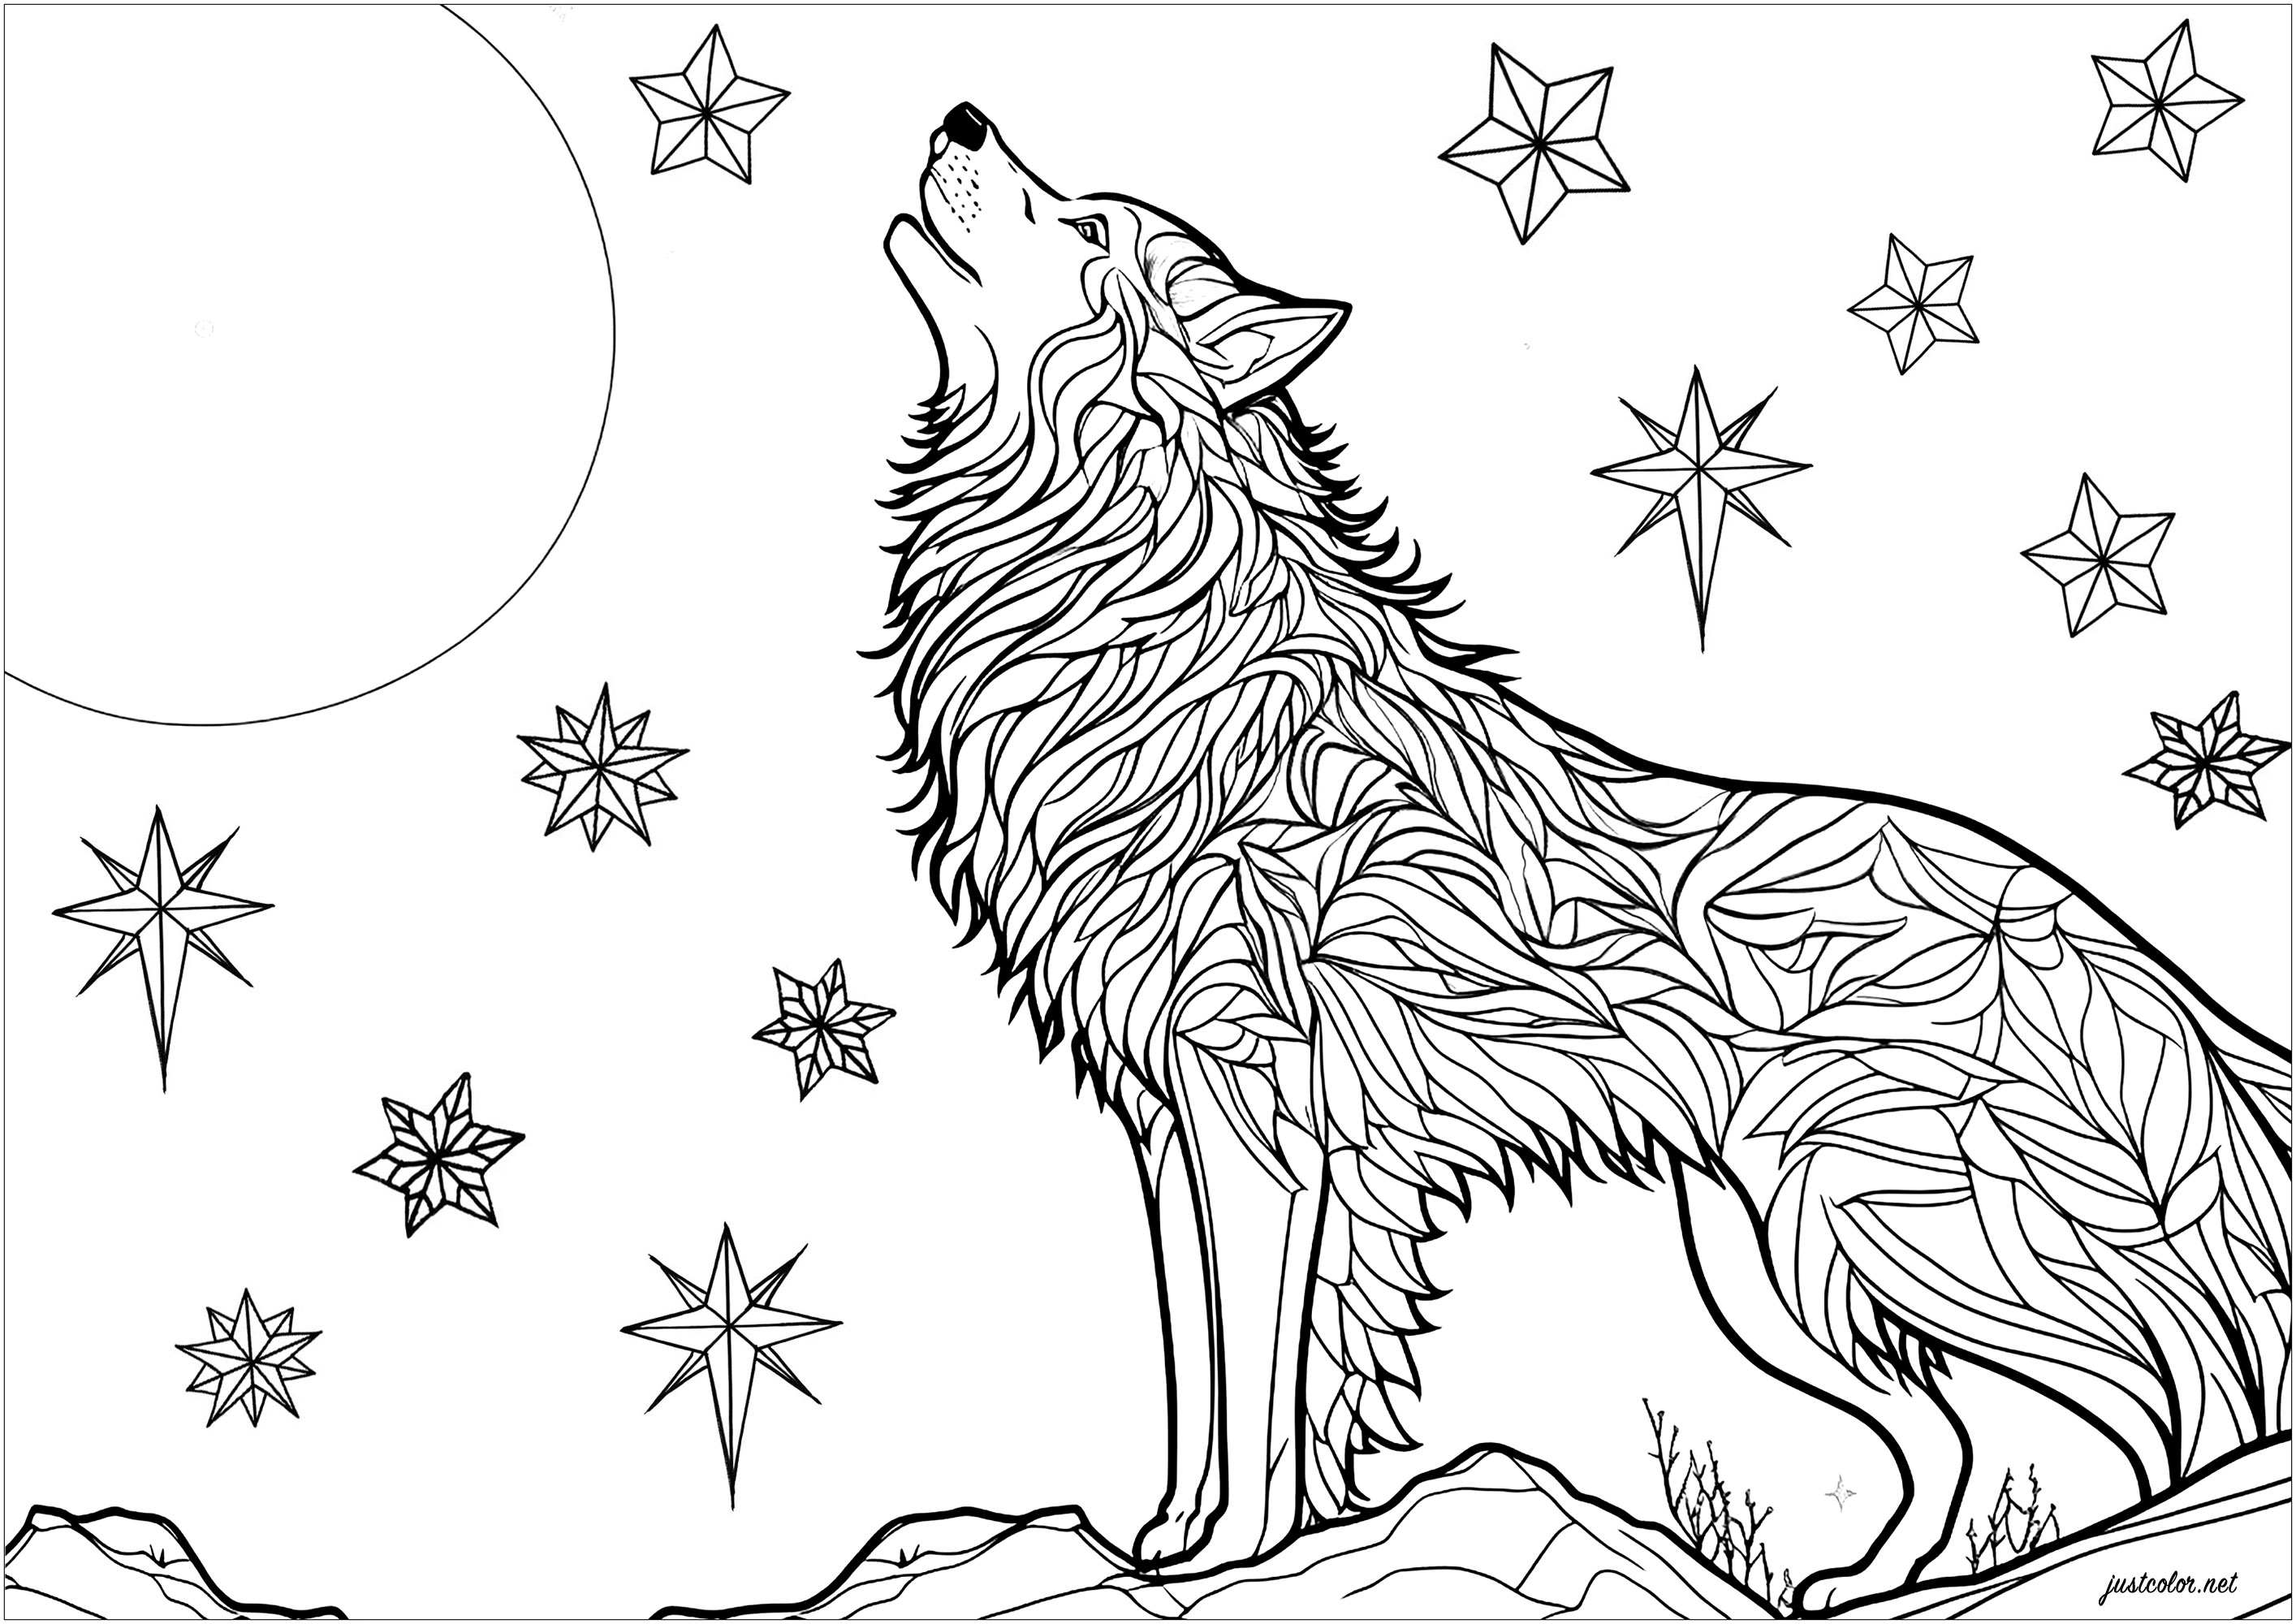 Colorir um lobo a uivar ao luar. Magnífica cena com um lobo a uivar à noite, pousado numa rocha. Podem ver-se estrelas cintilantes no céu noturno. Os padrões do pelo do lobo podem ser coloridos de forma independente, para um resultado cheio de mistério e magia.